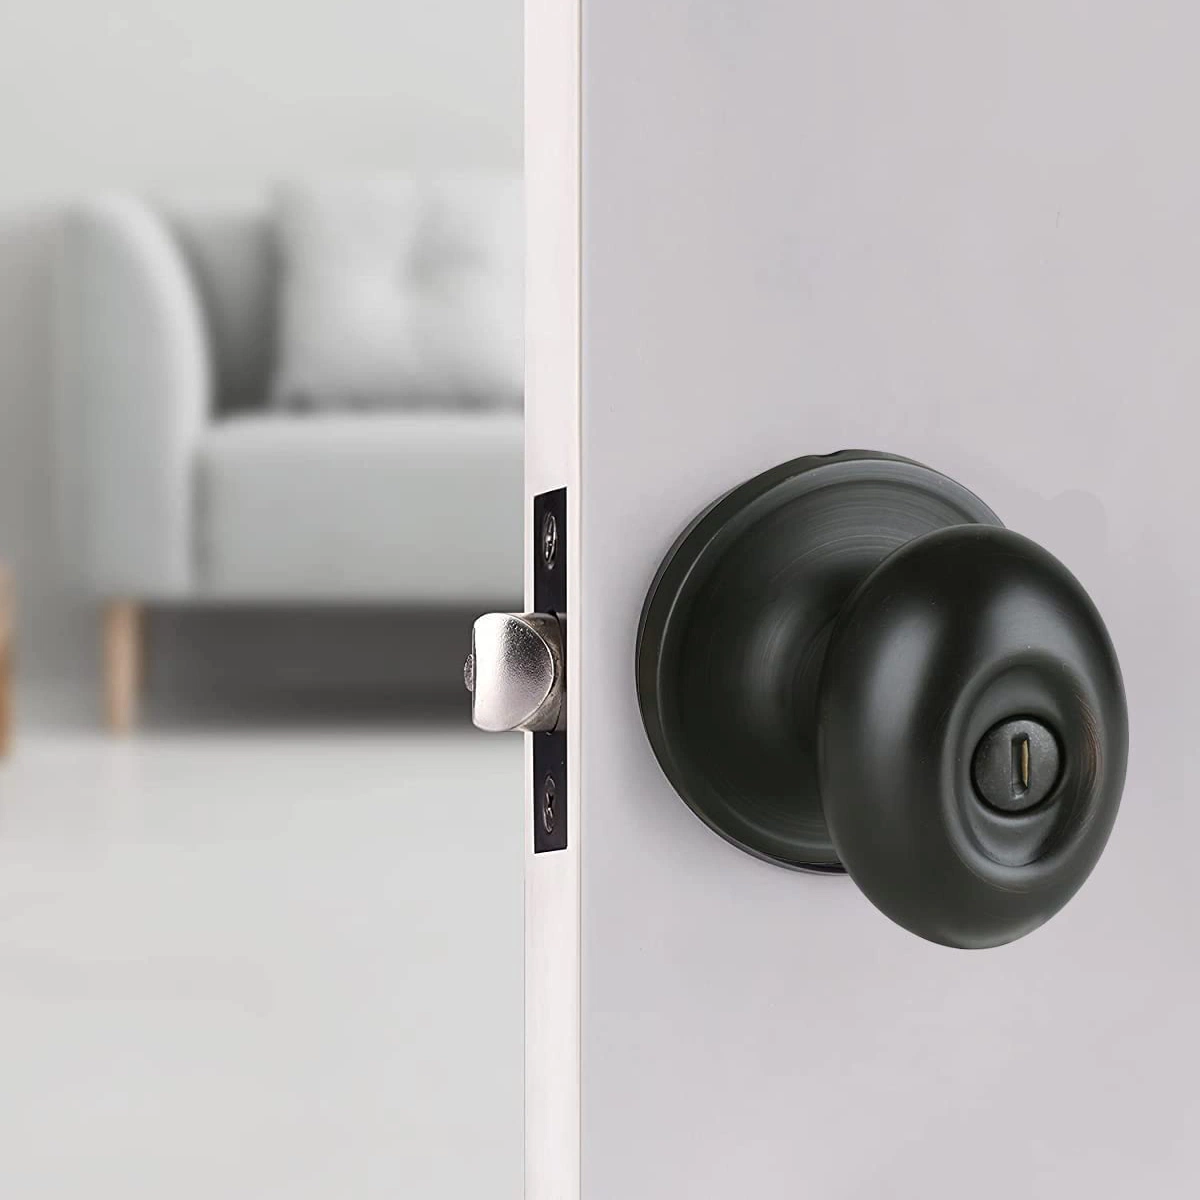 Bedroom Bathroom Oval Egg Ball Door Knob Black Finish Door Lock Set Keyed Entry Locks